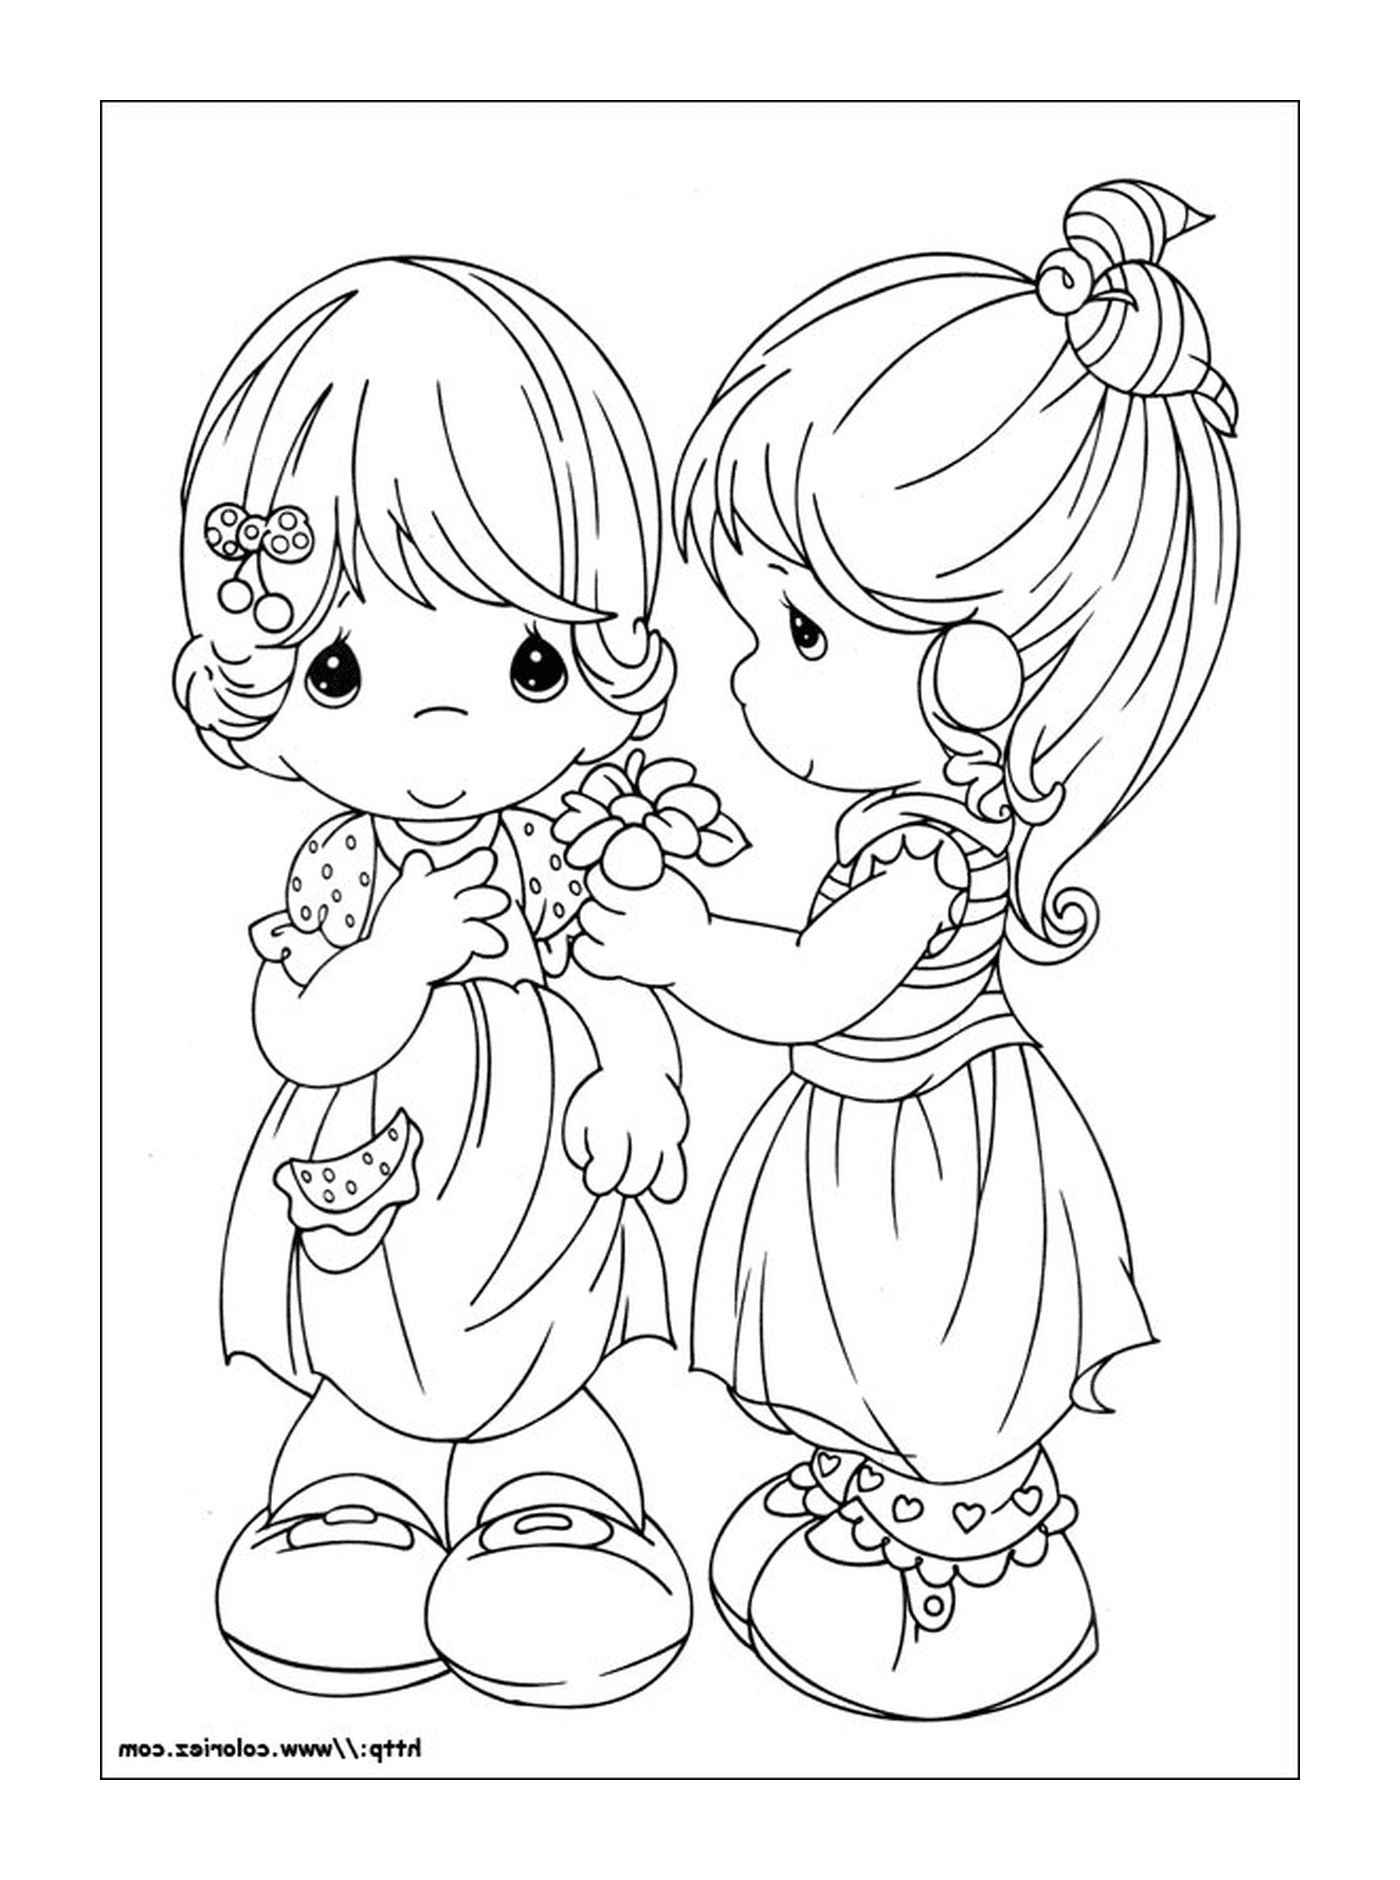  Zwei kleine Mädchen stehen nebeneinander 